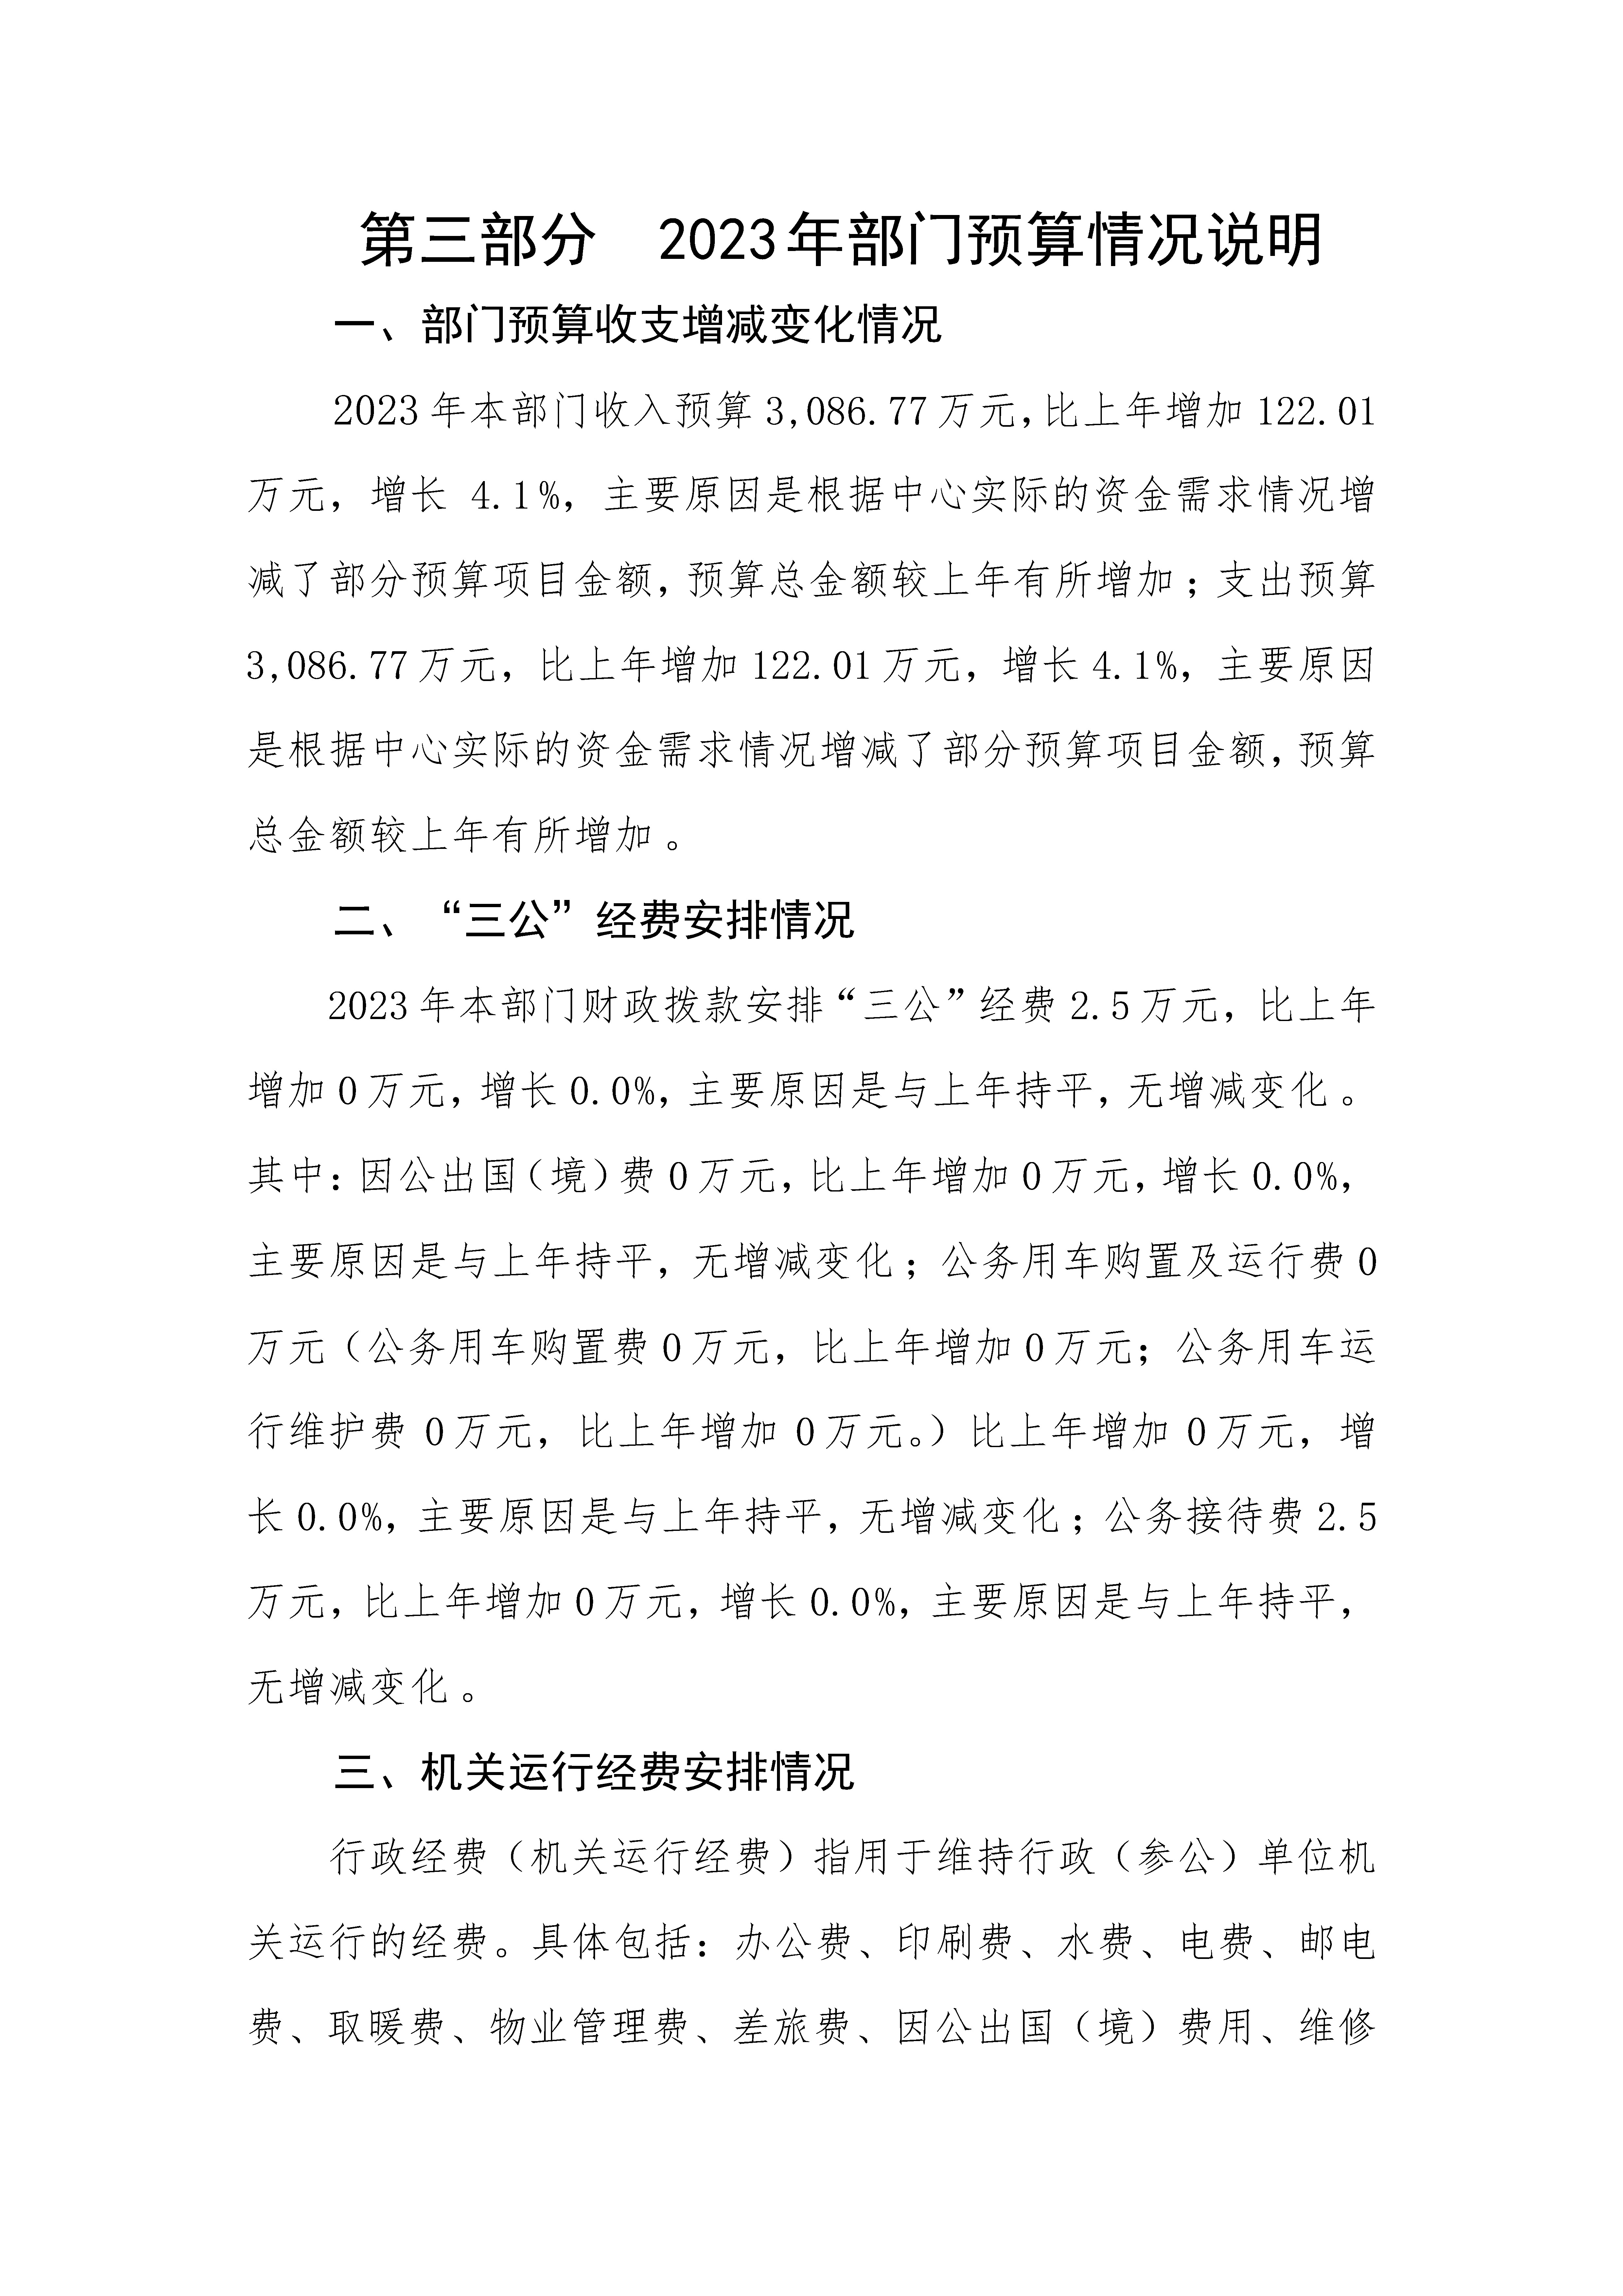 2023年广东省残疾人康复中心部门预算_页面_22.jpg